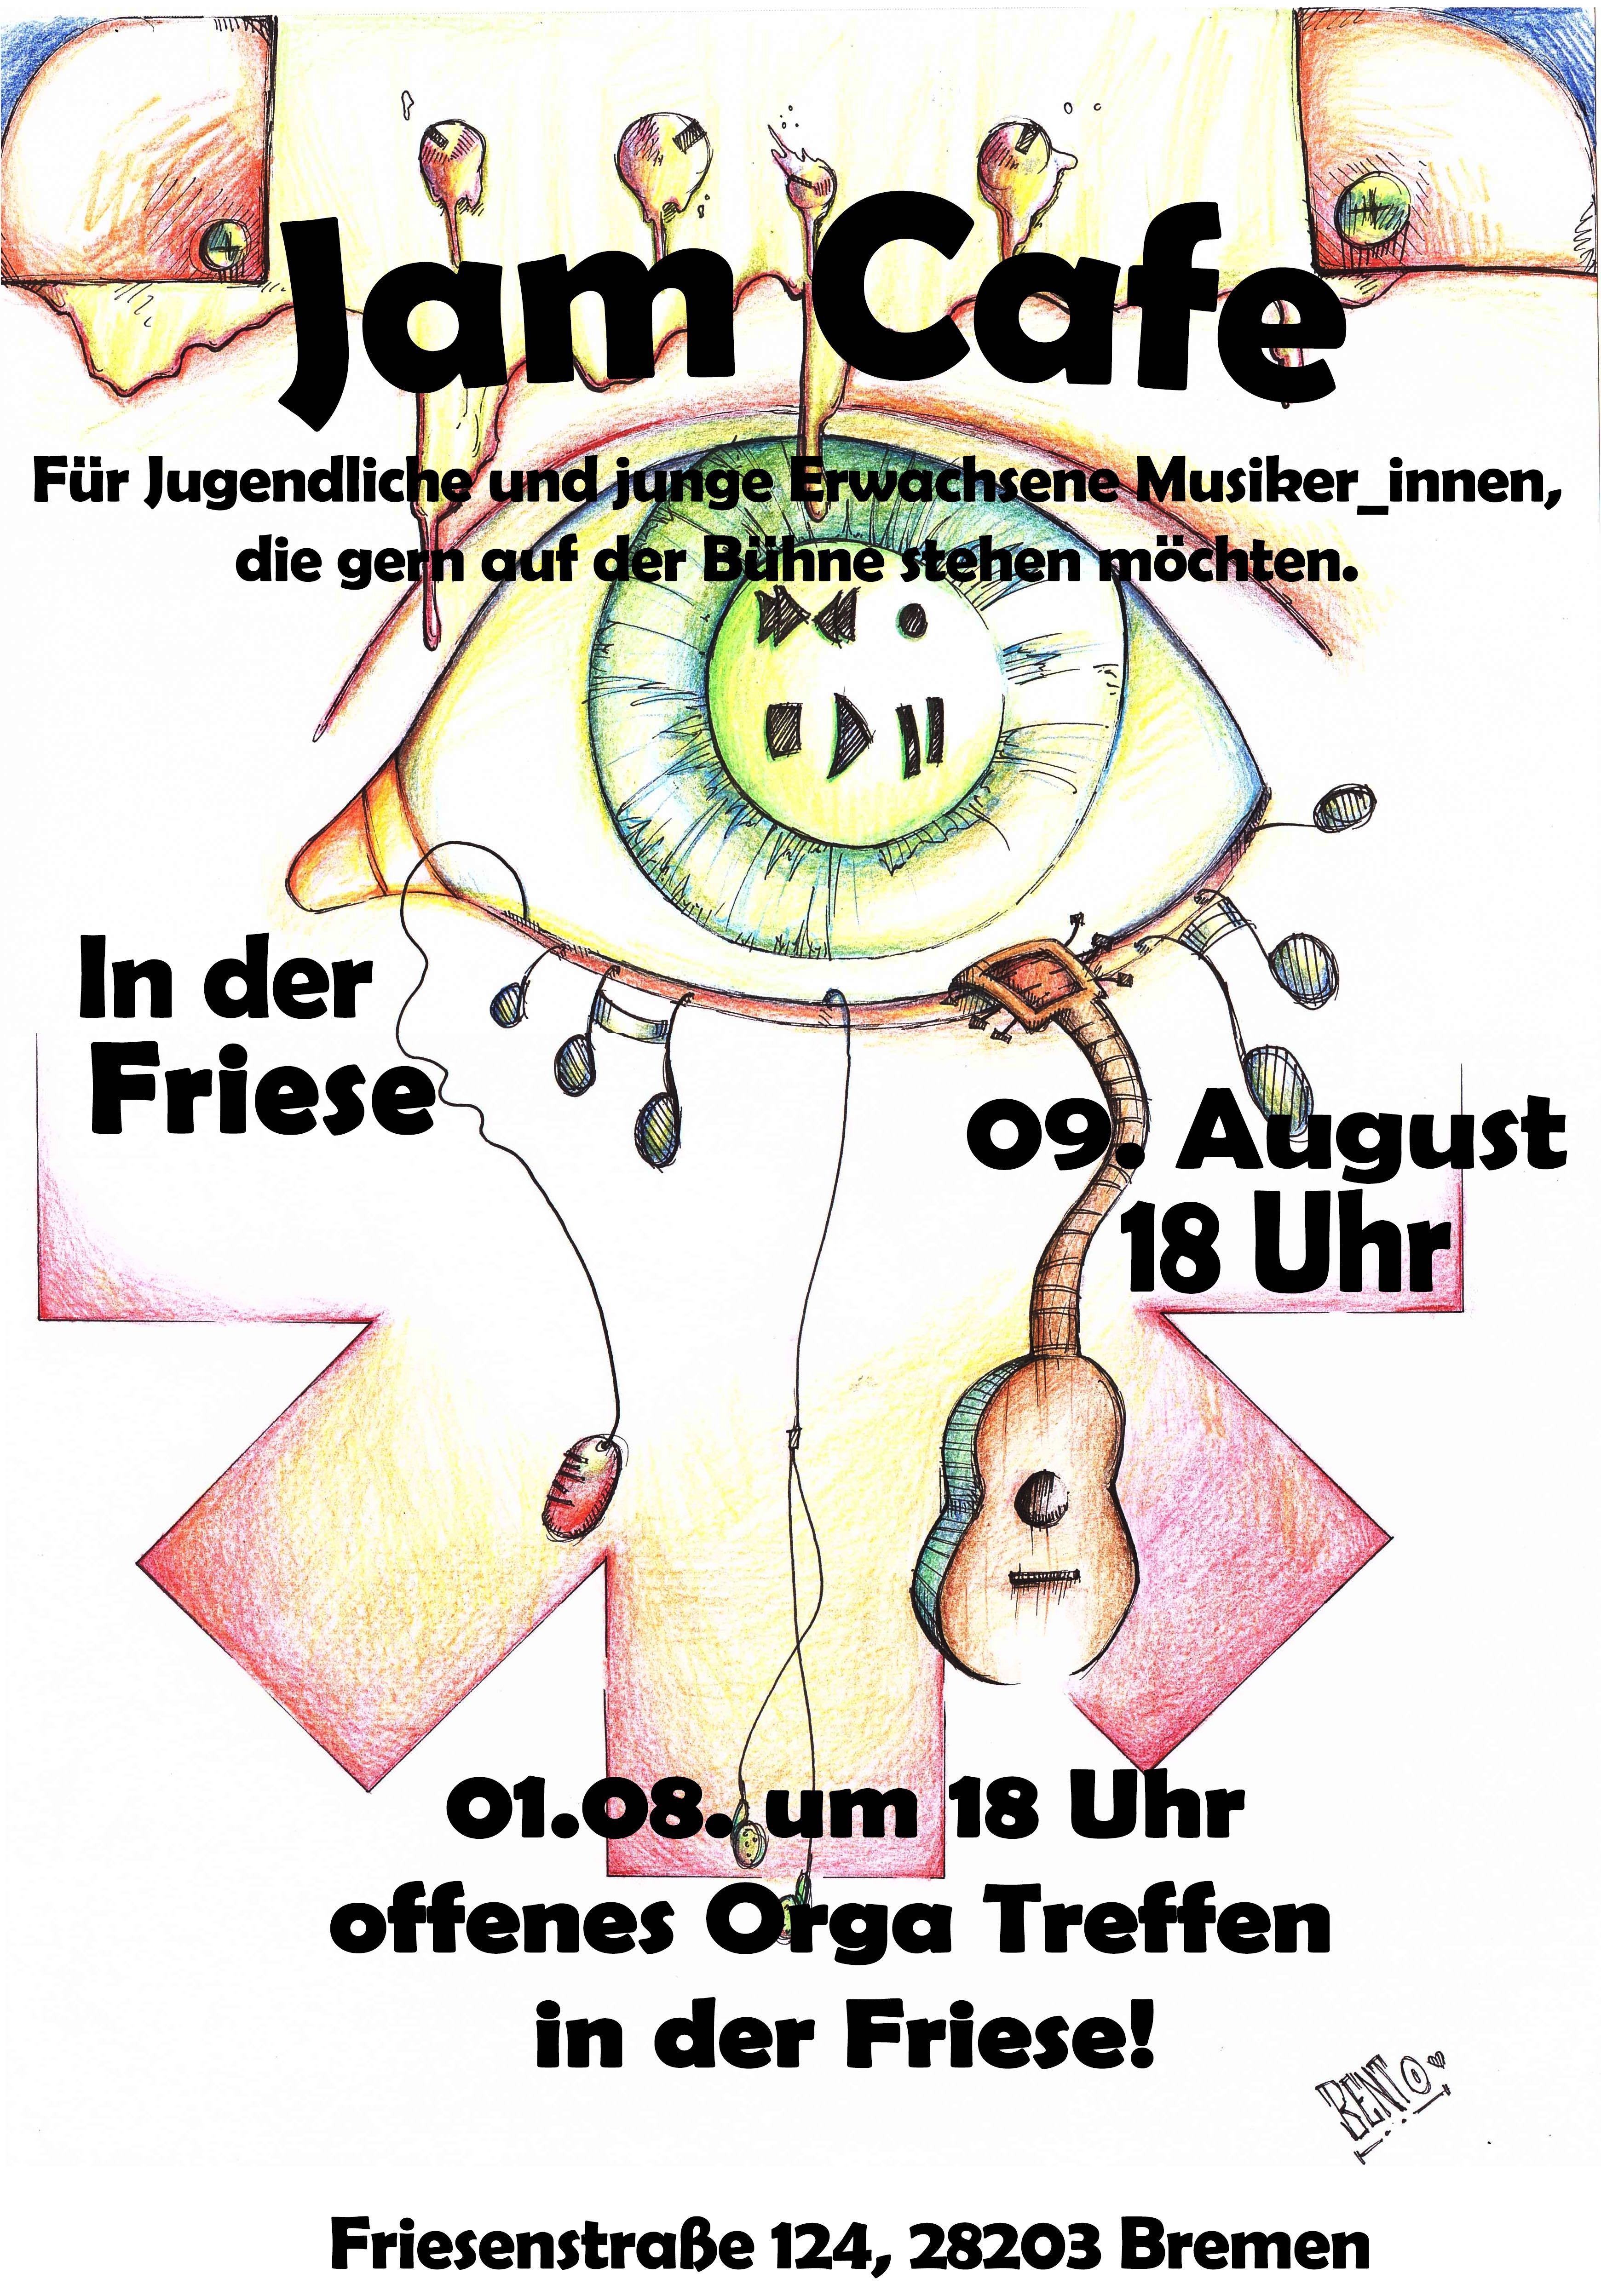 files/images/Musikbereich-Bilder/Plakat mit Orga Treffen Kopie.jpg